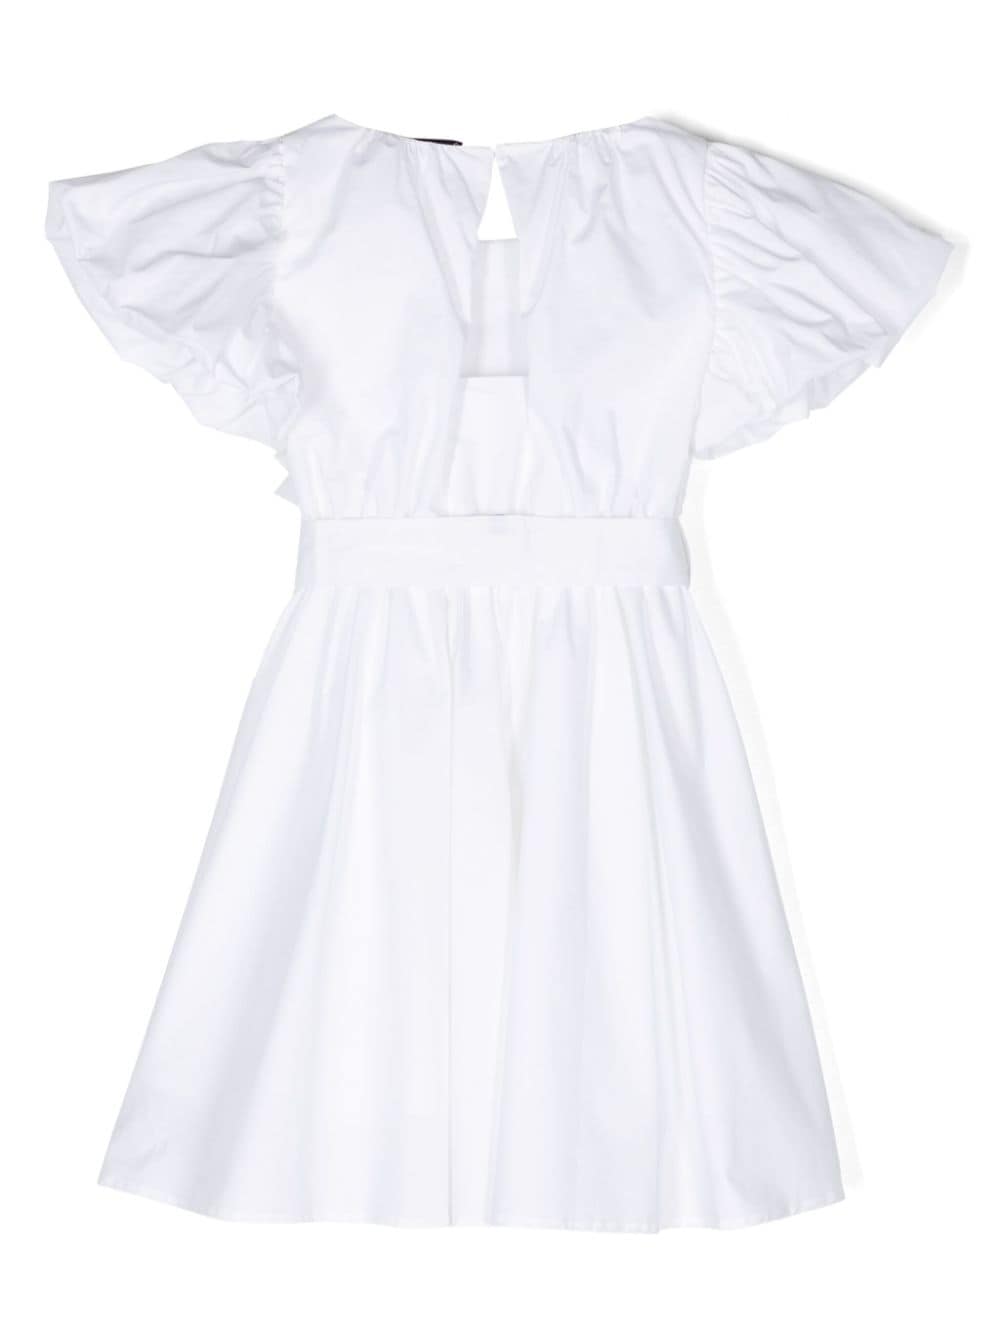 White dress for little girls